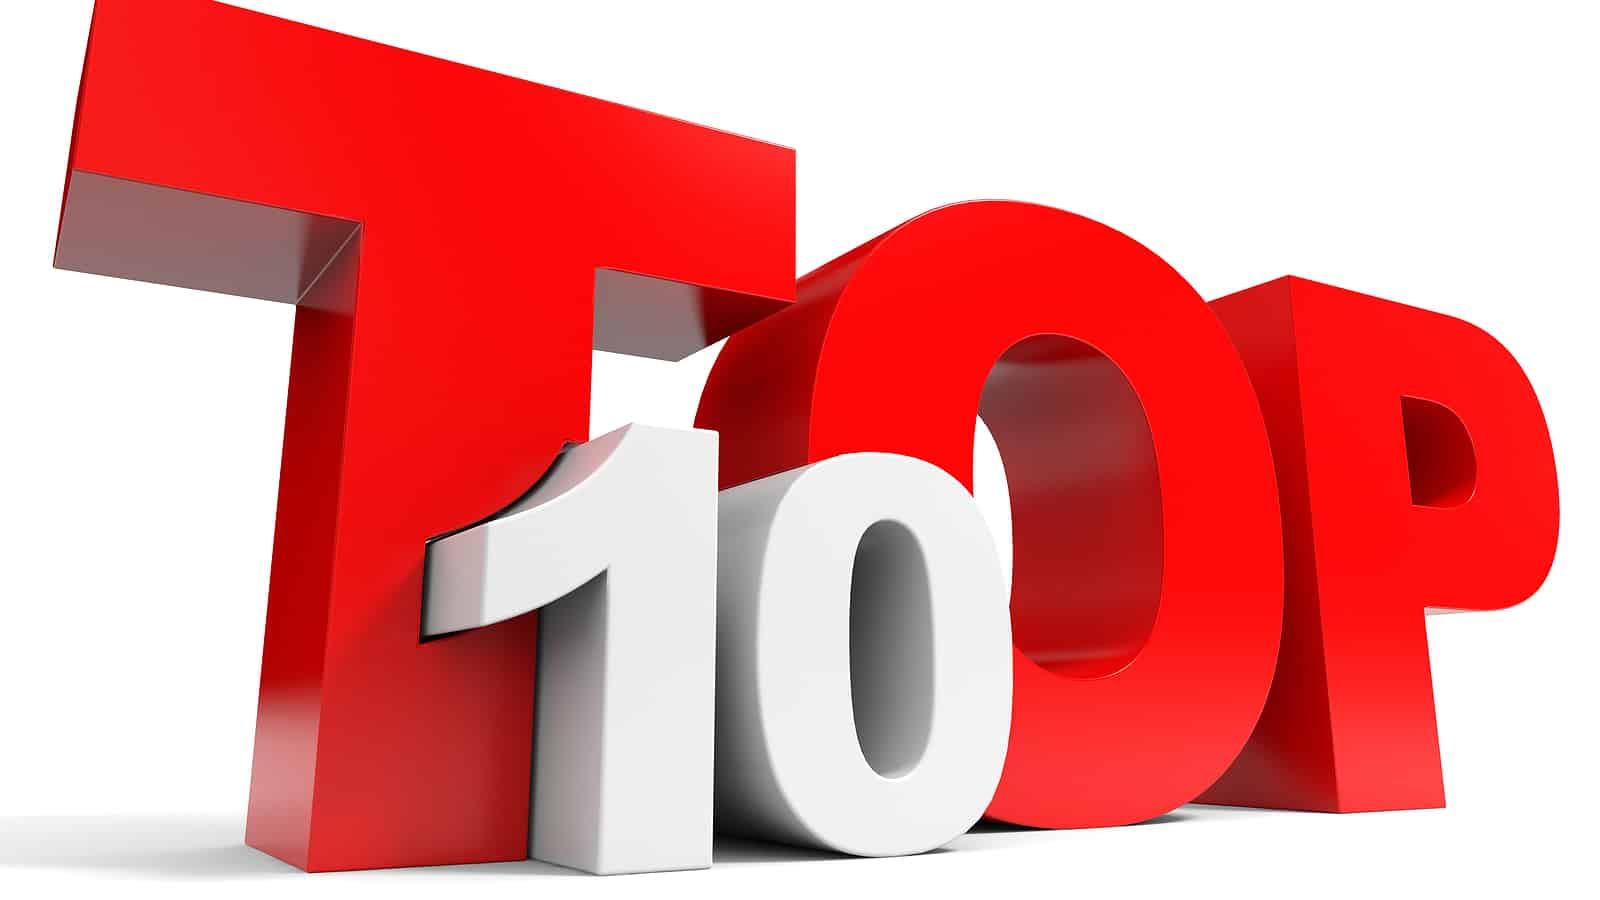 Top 10 top 10 lists